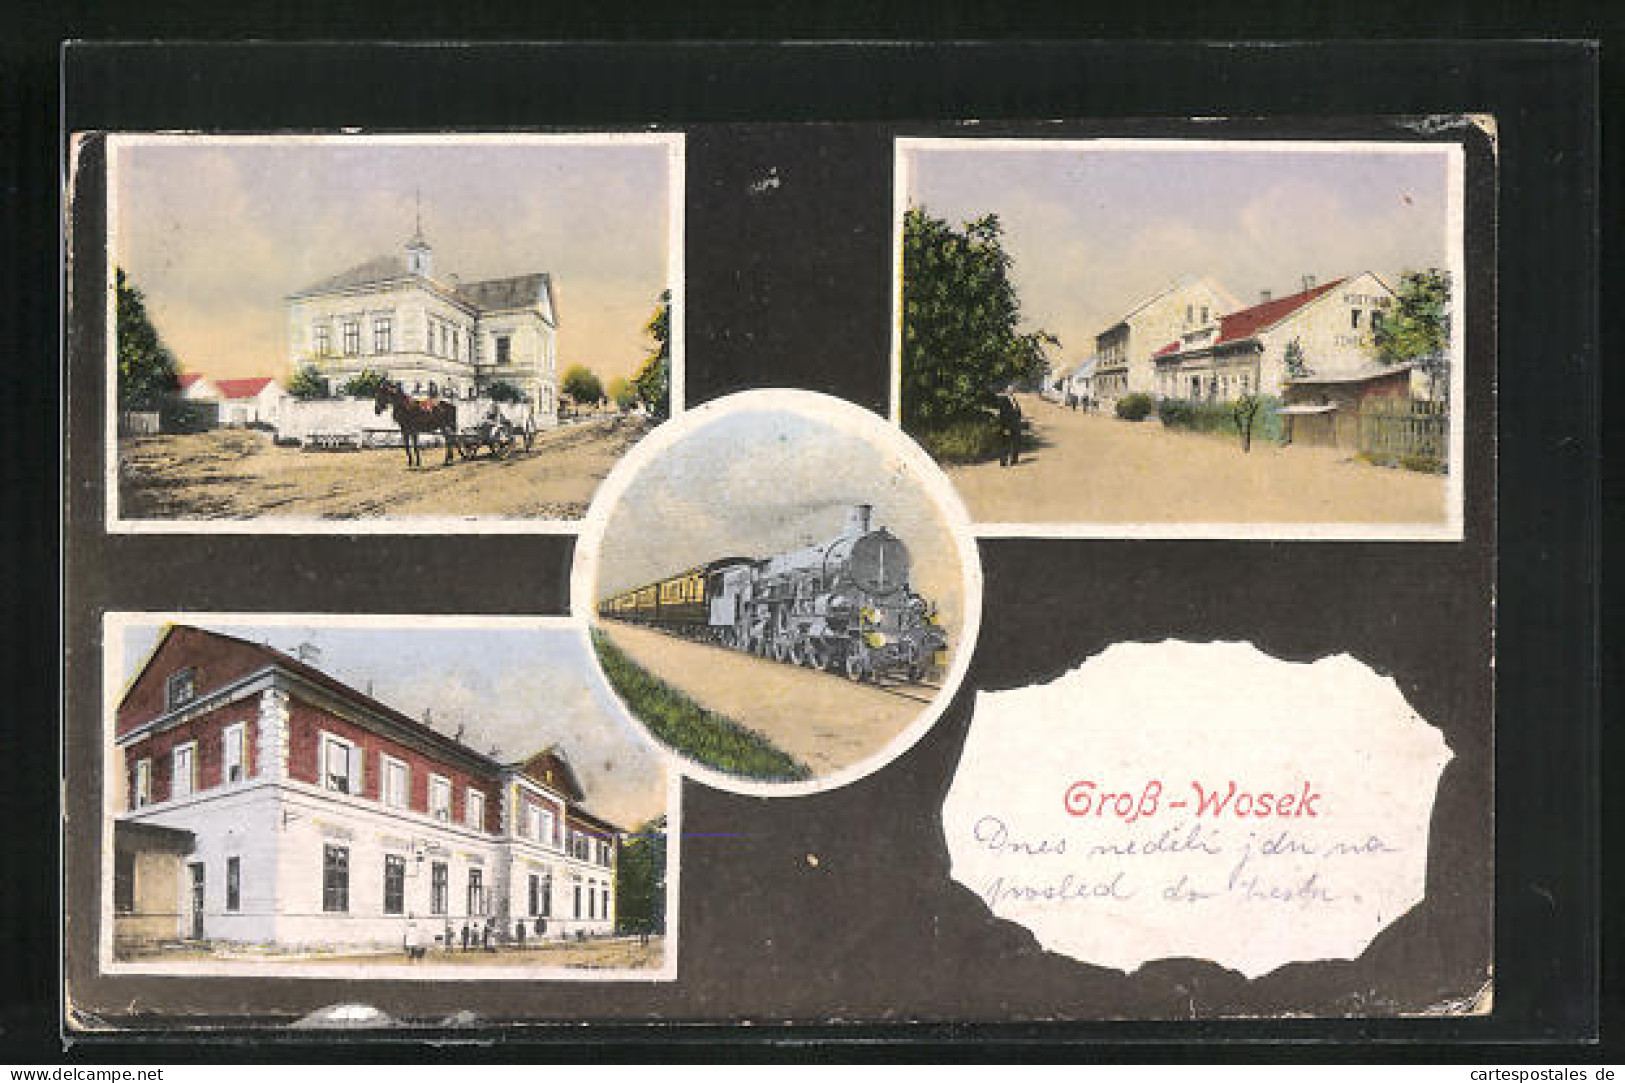 AK Gross-Wosek, Gebäudeansichten, Eisenbahn  - Czech Republic